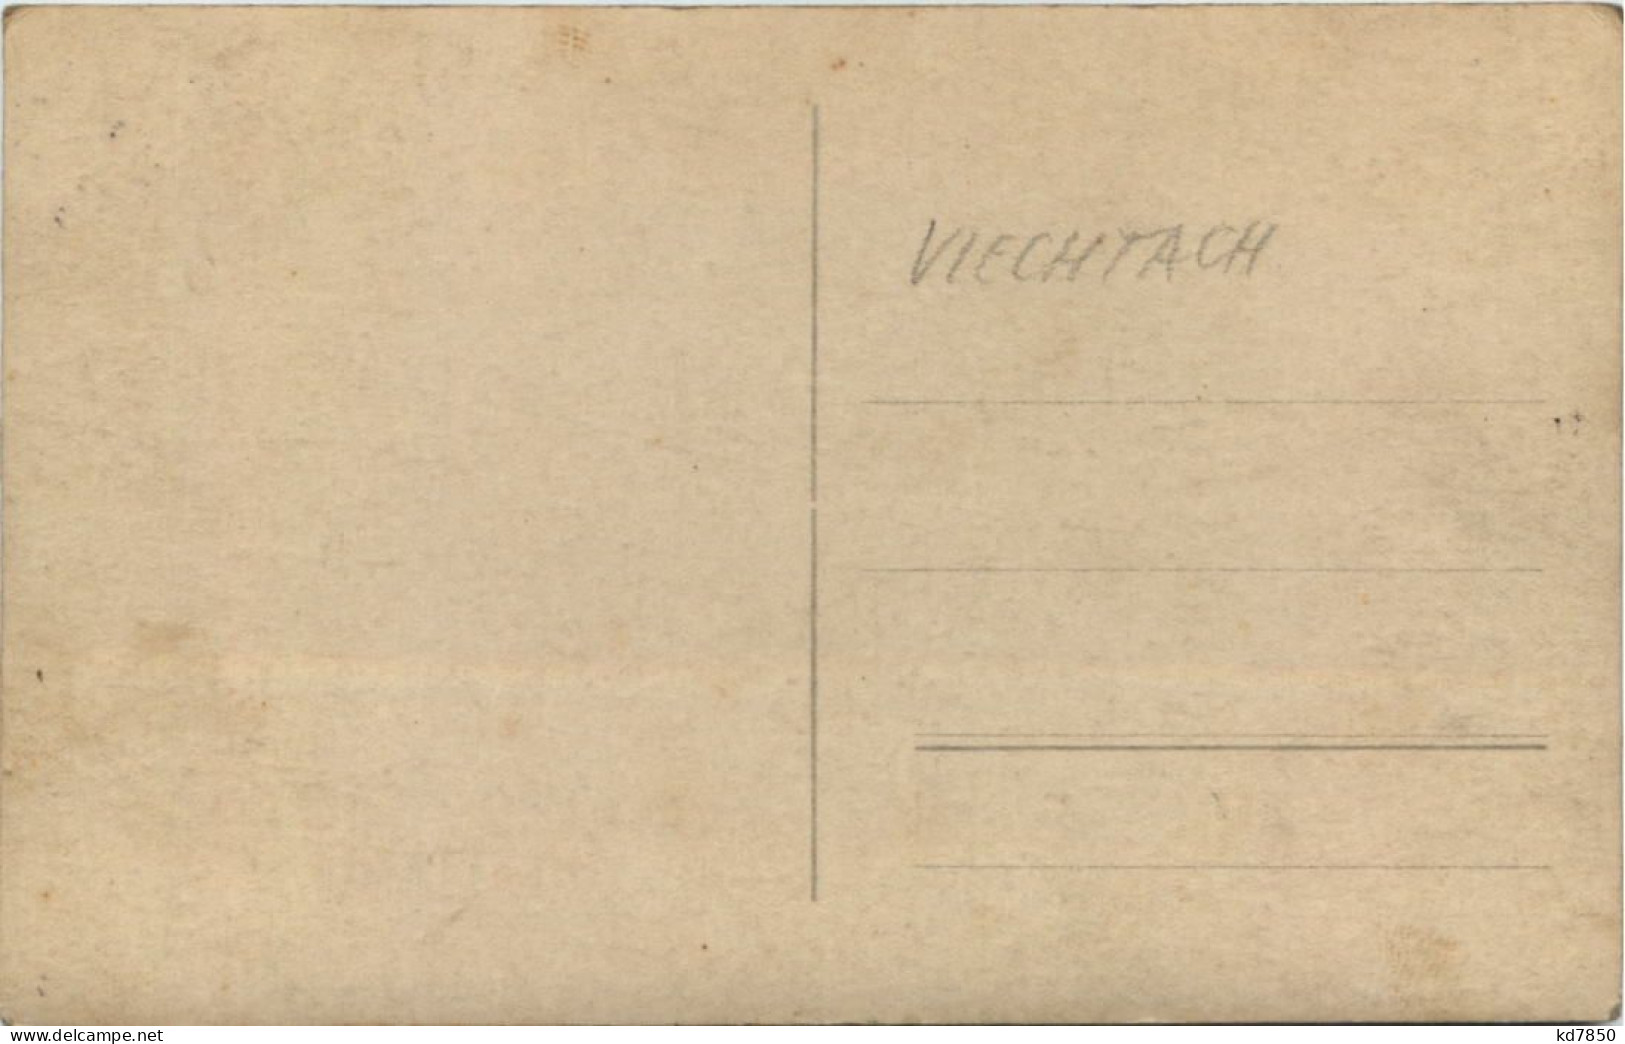 Viechtach - Mtorrad - Dr. Heidenreich - Regen